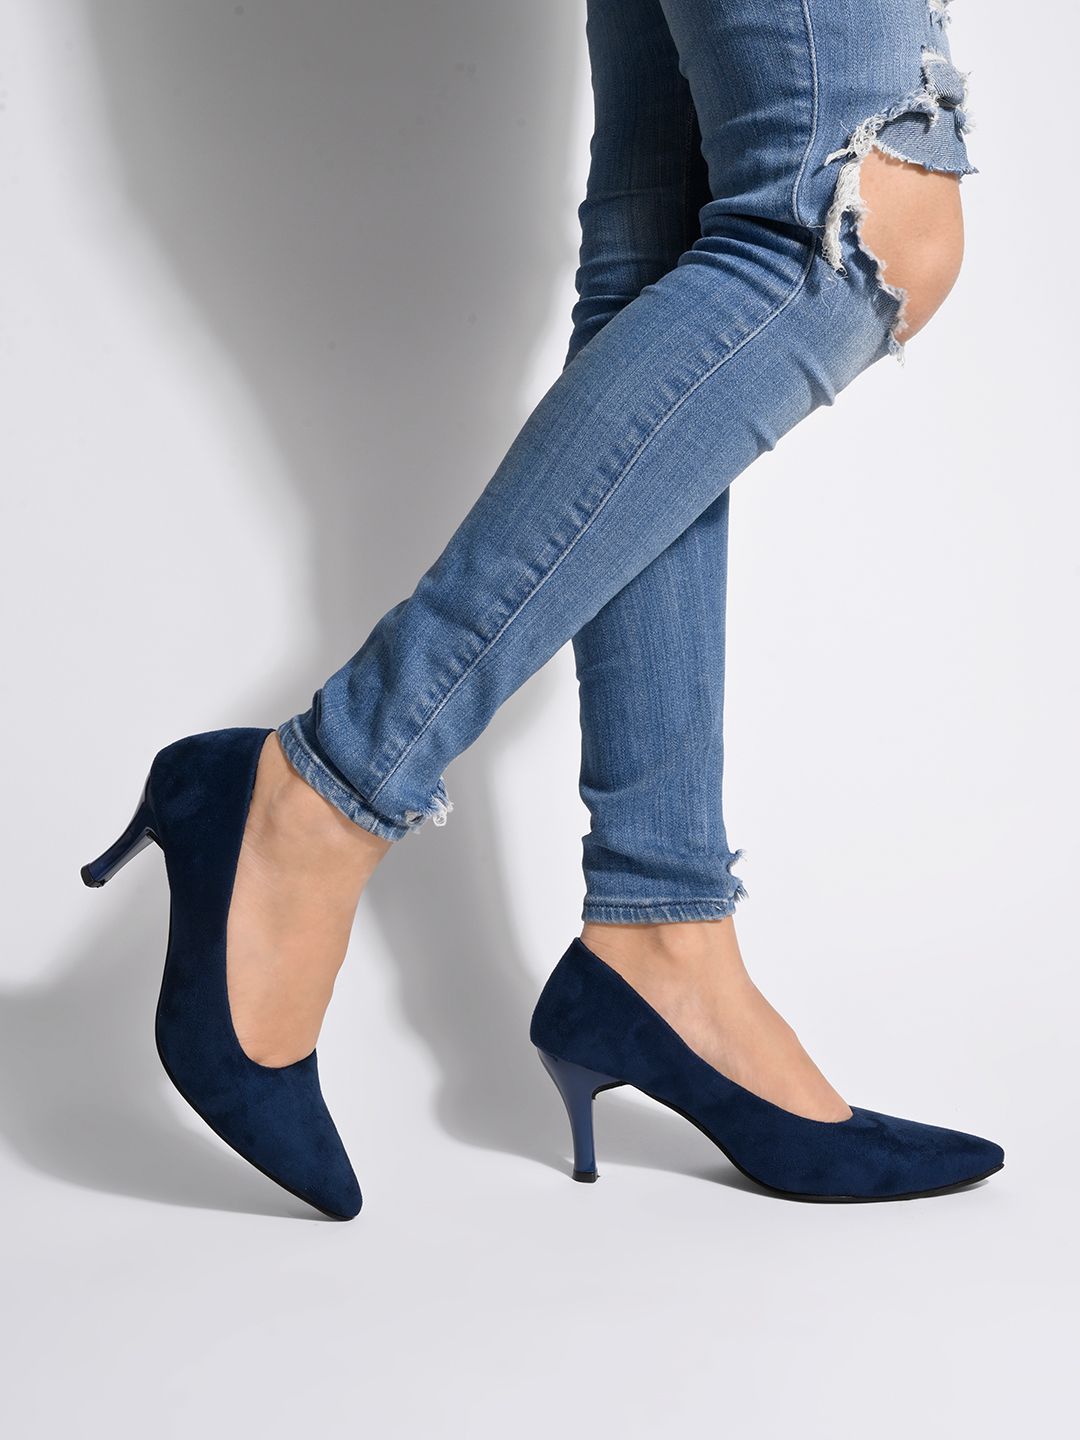     			Shoetopia - Blue Women's Pumps Heels